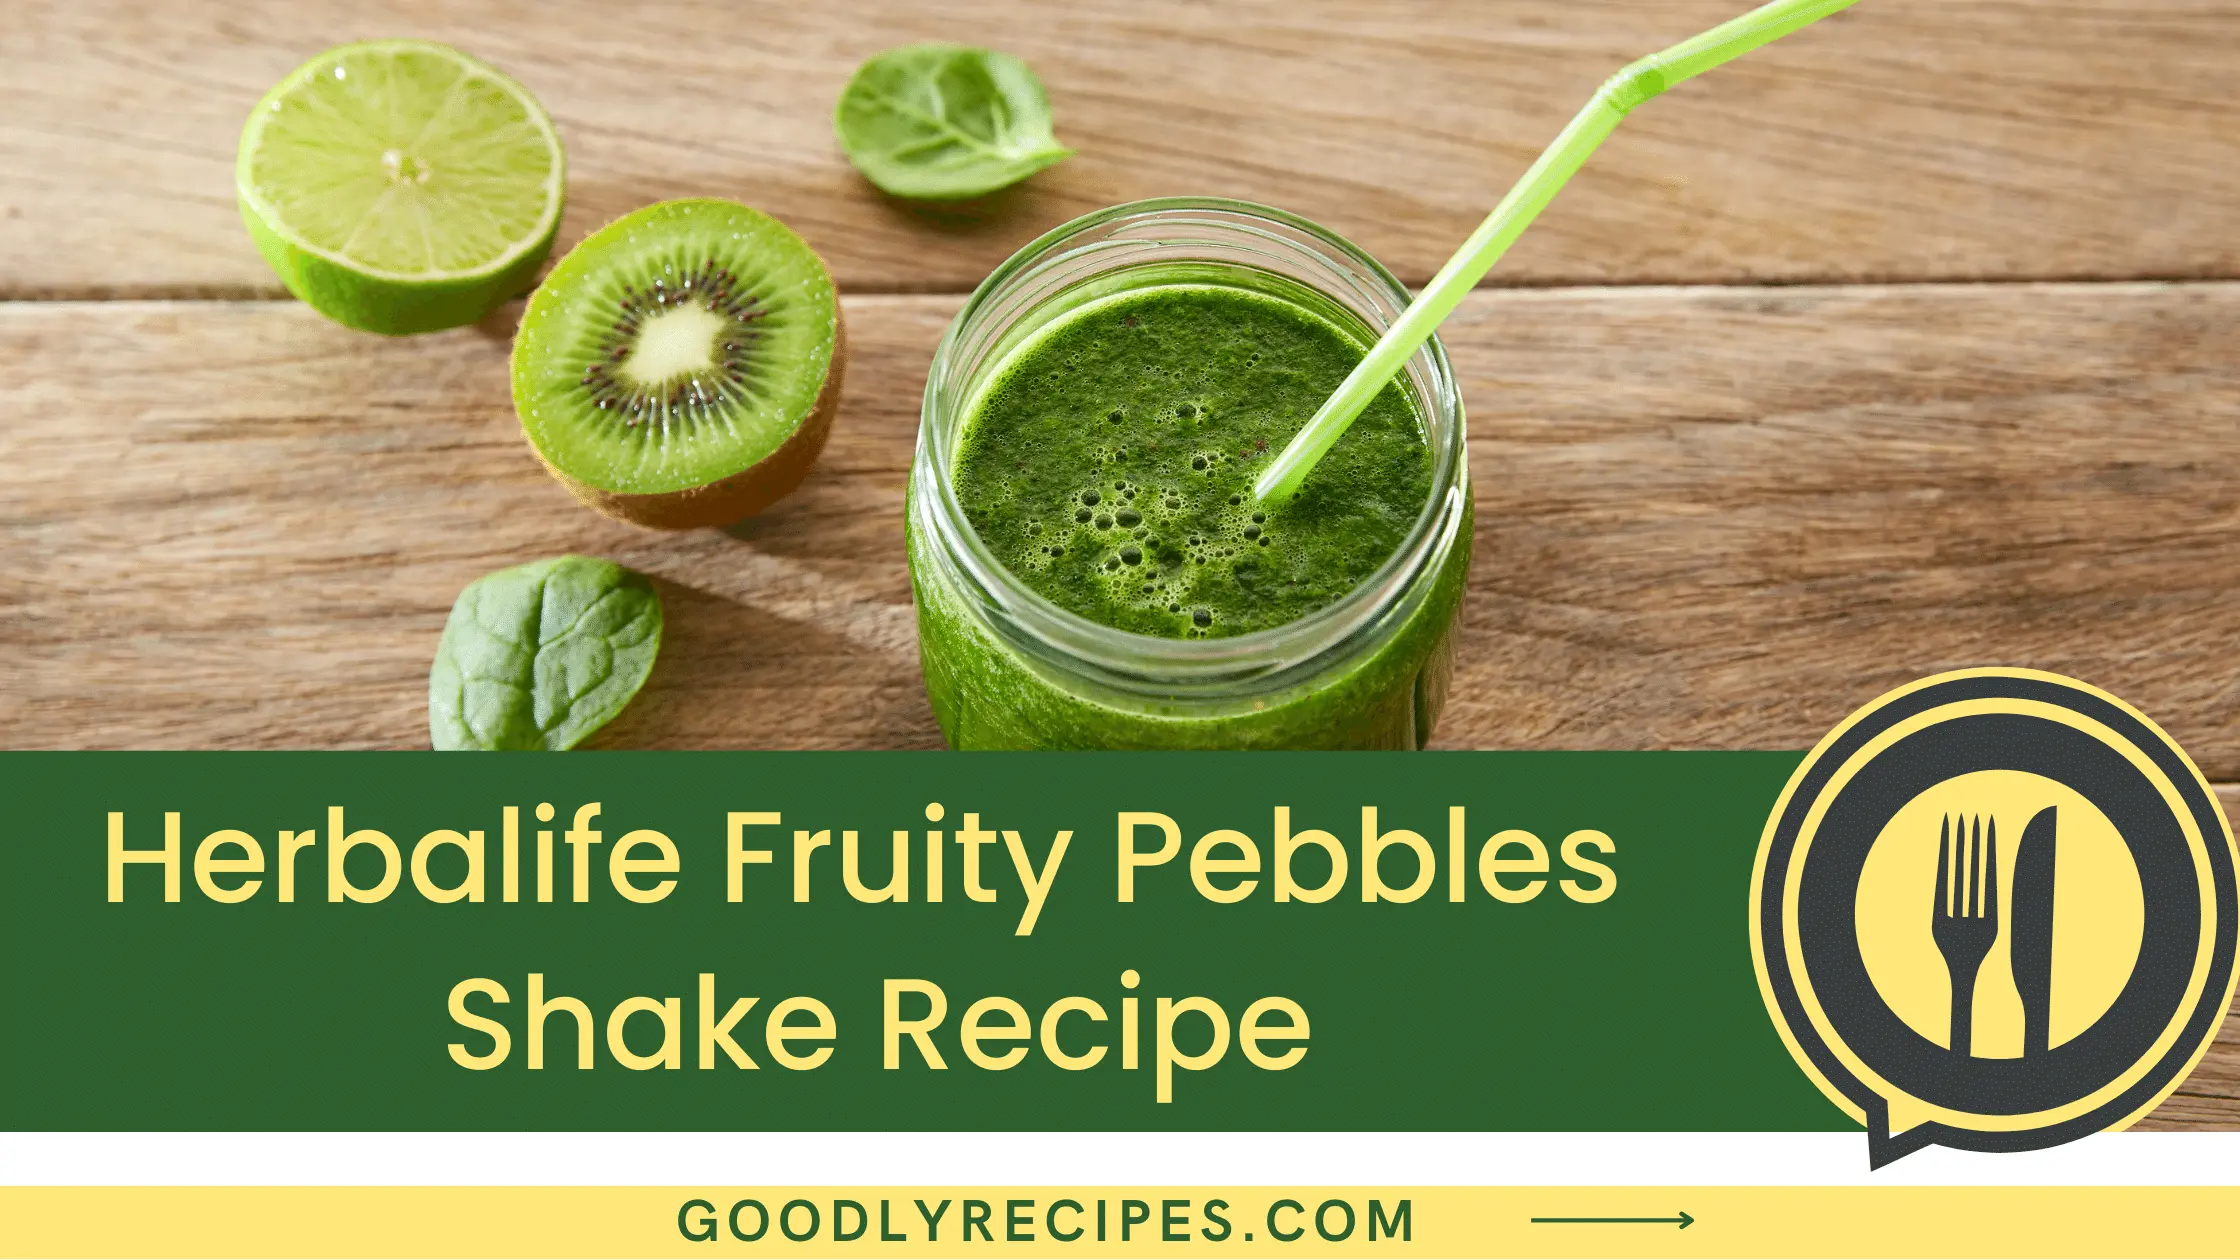 What is Herbalife Fruity Pebbles Shake?